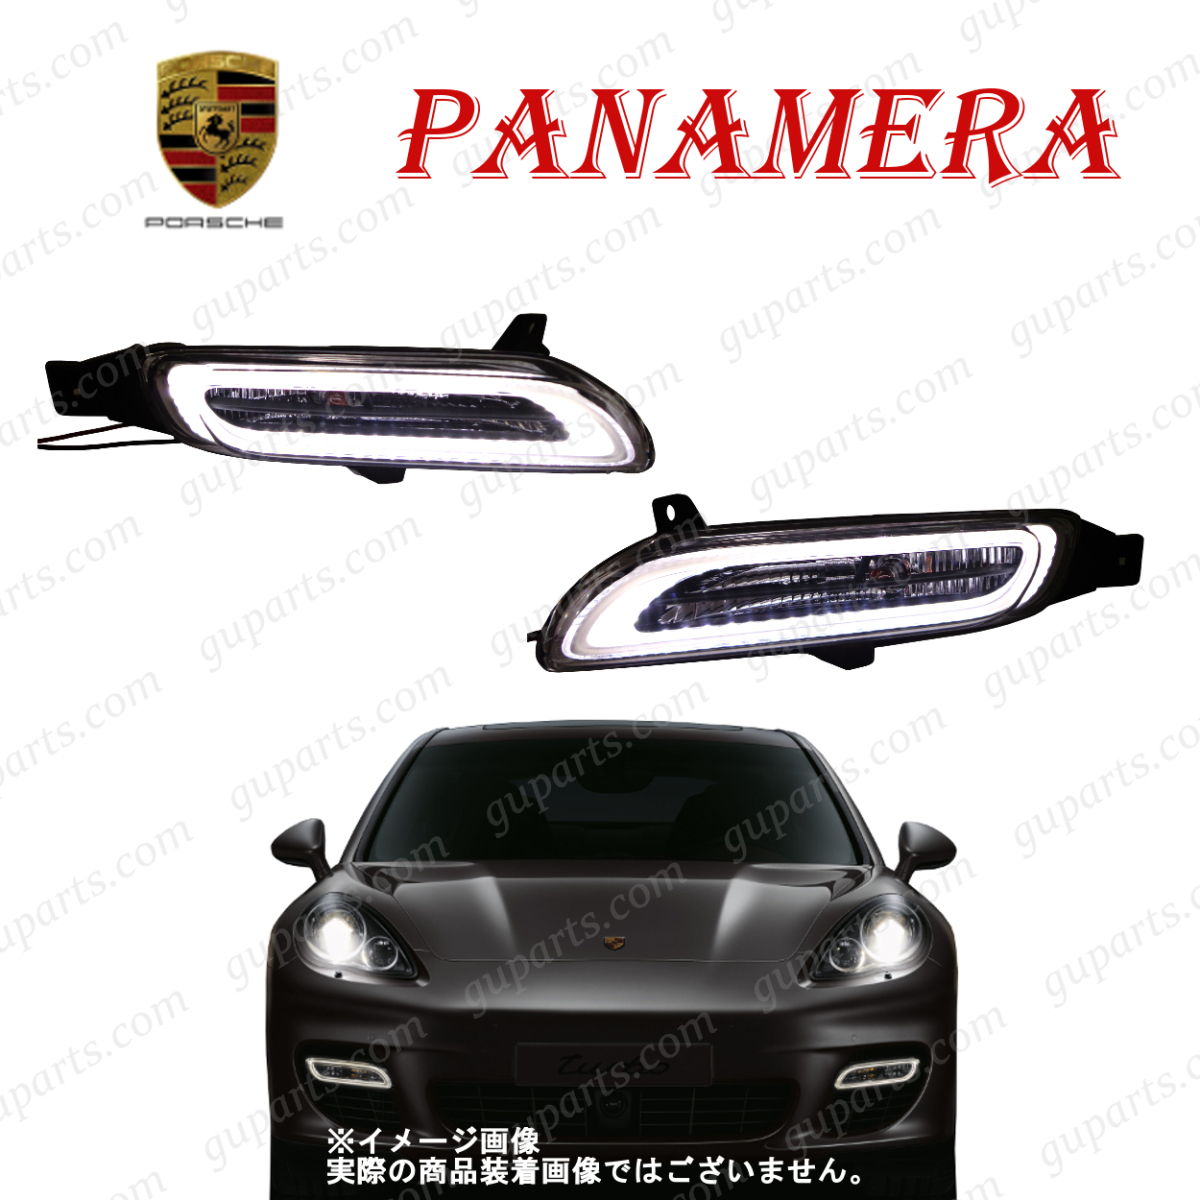  Porsche Panamera турбо модель 970M48A 970M48TA ~\'13 левый правый LED дневной свет противотуманая фара 97063108301 97063108401